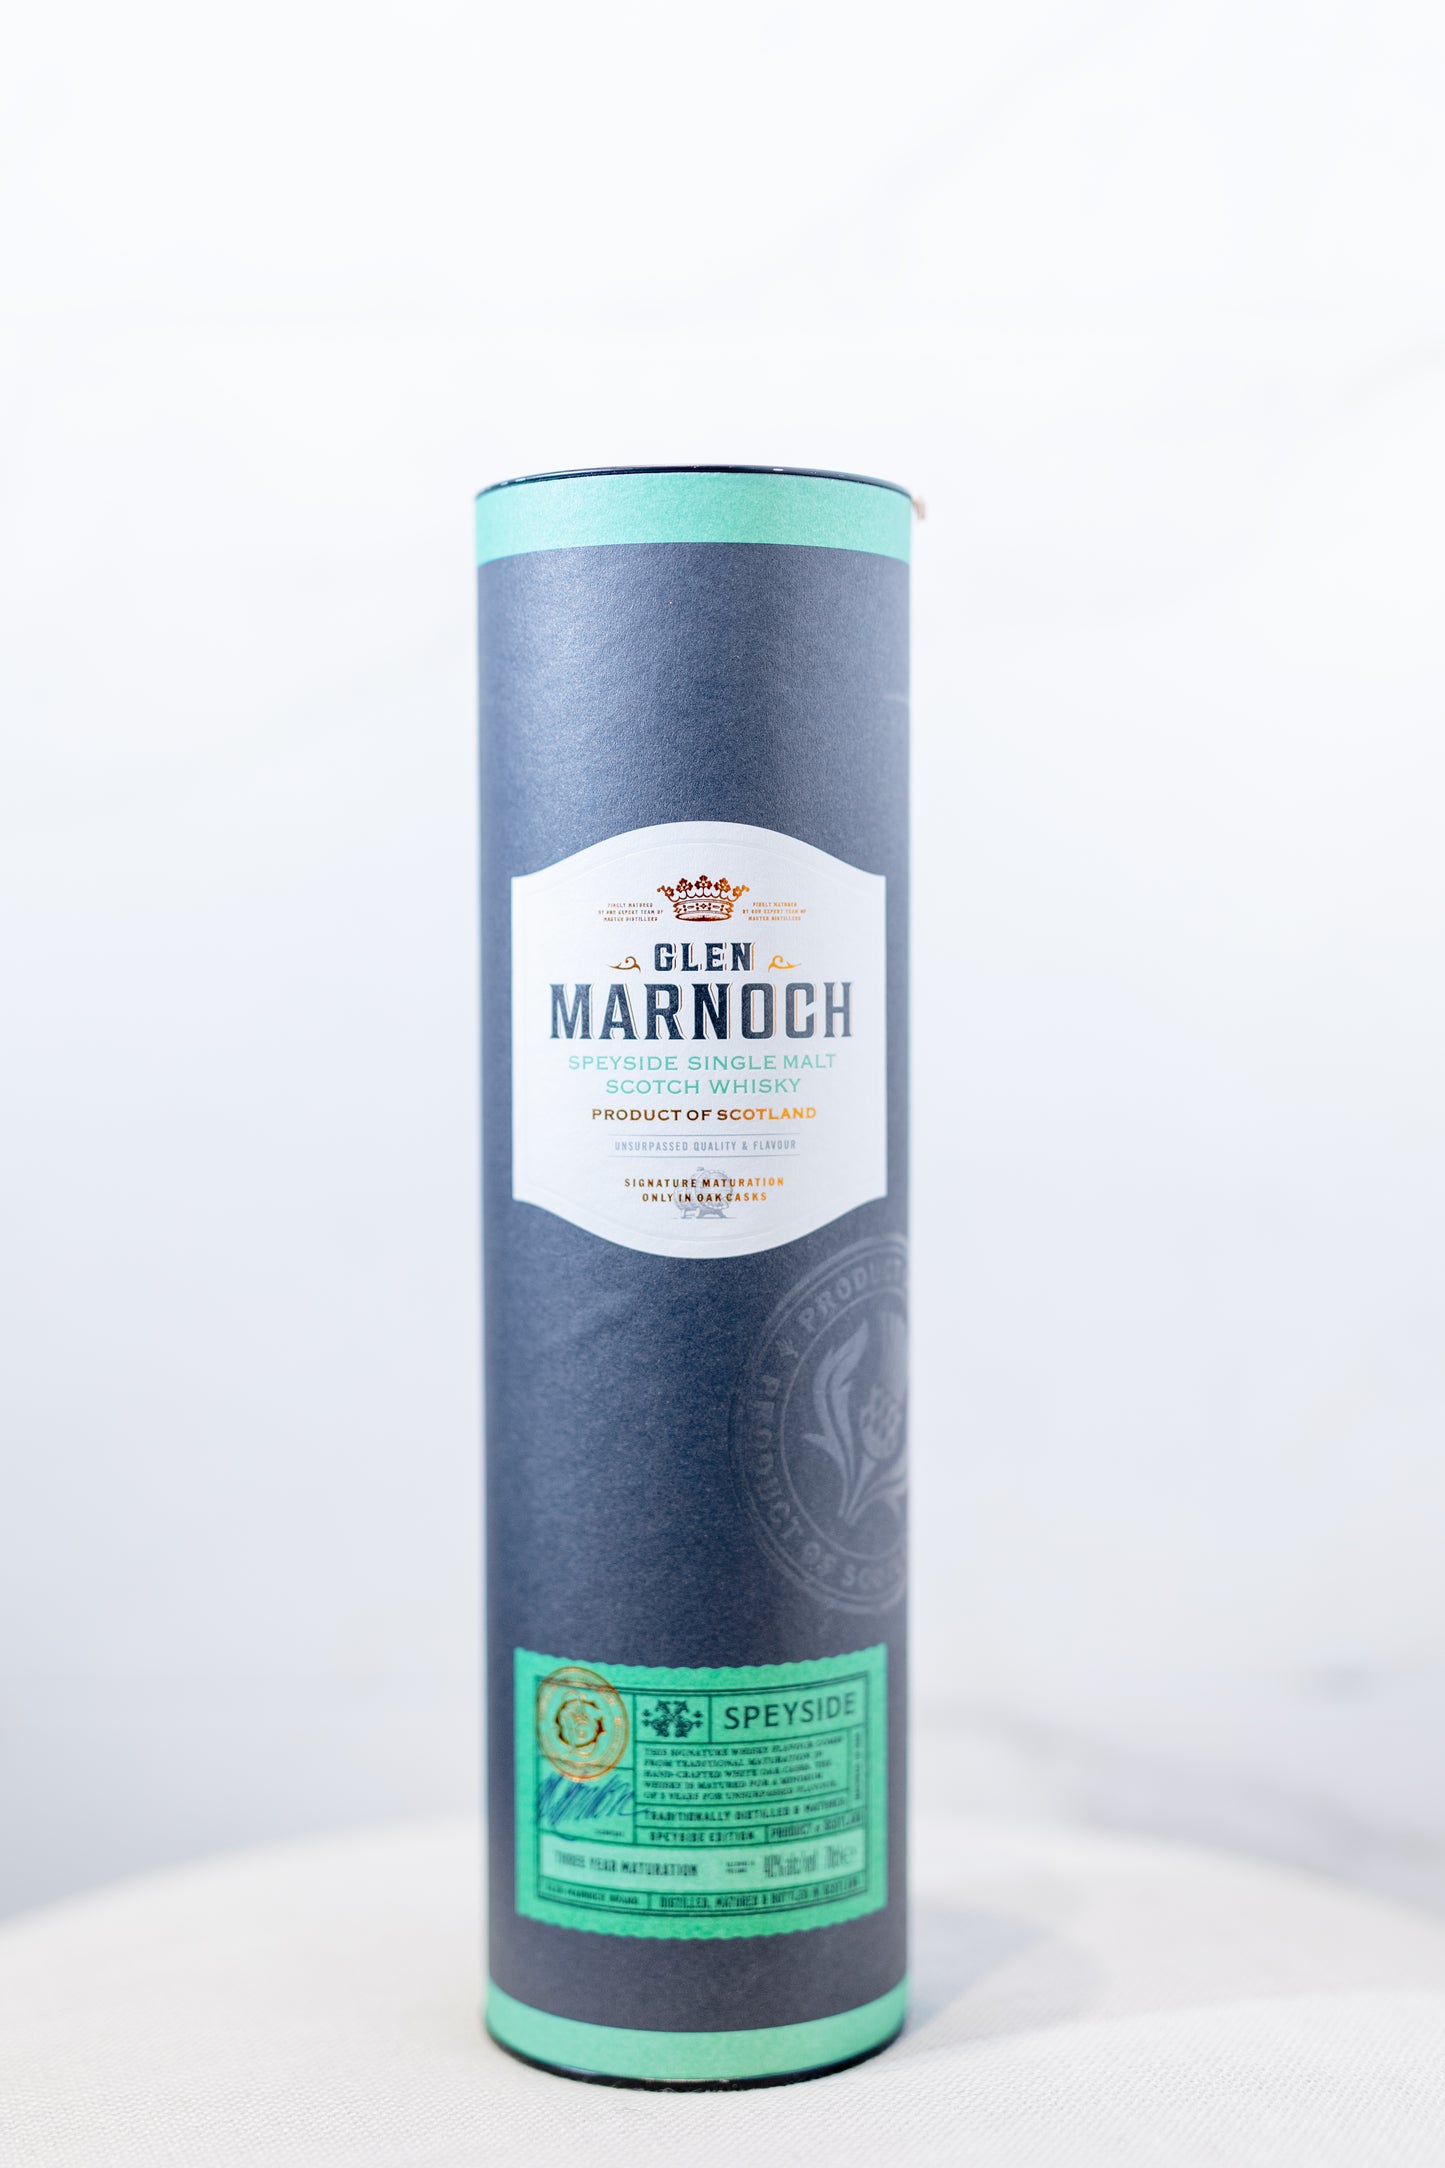 Glen Marnoch Speyside Single Malt Scotch Whisky